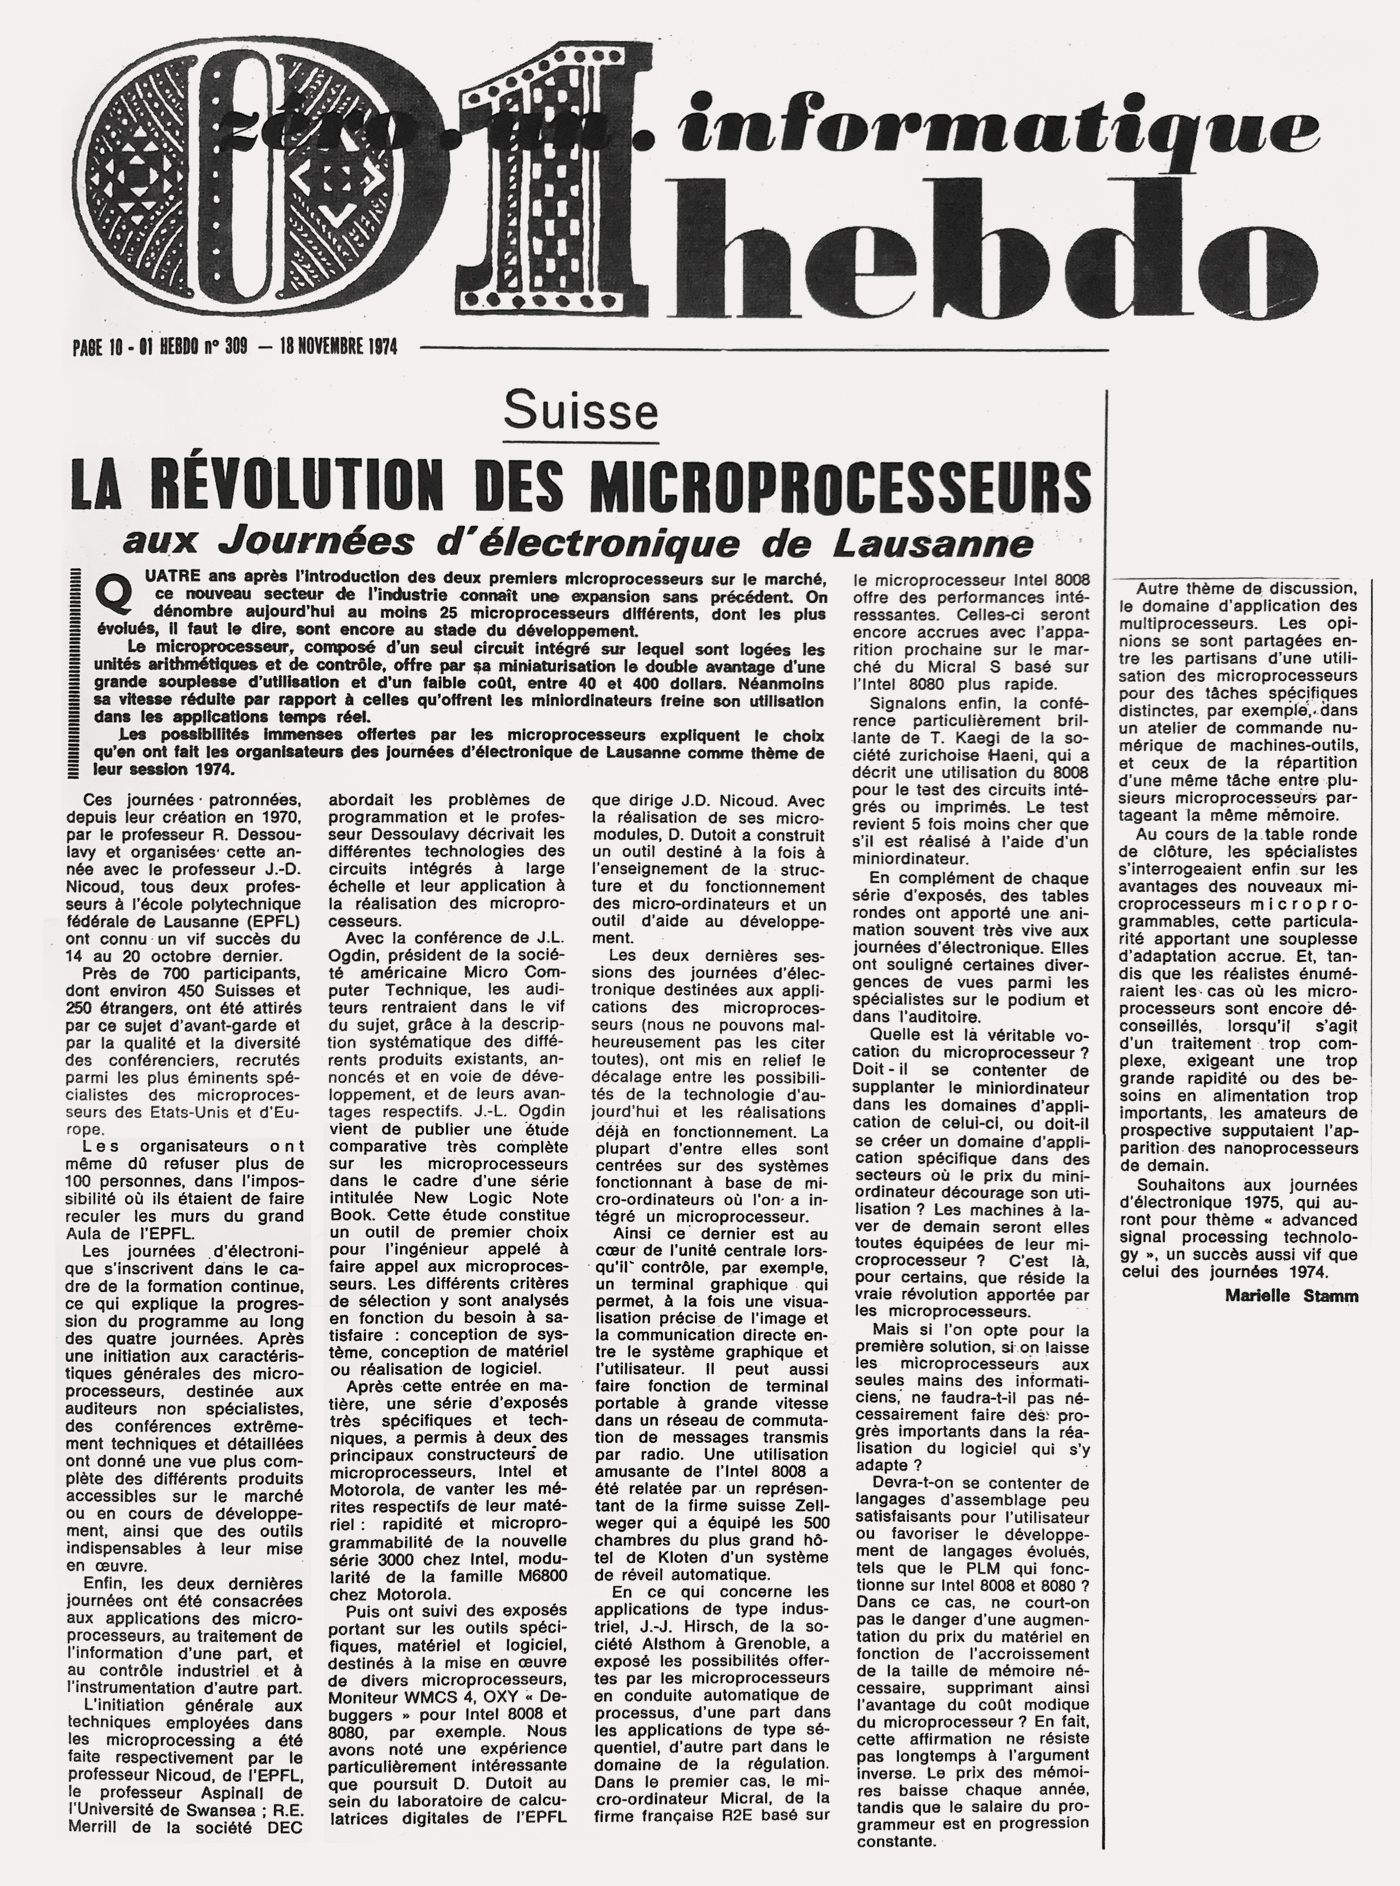 La révolution des microprocesseurs, un des premiers articles écrits par Marielle Stamm en tant que journaliste en informatique (18/11/1974)-18_11_1974